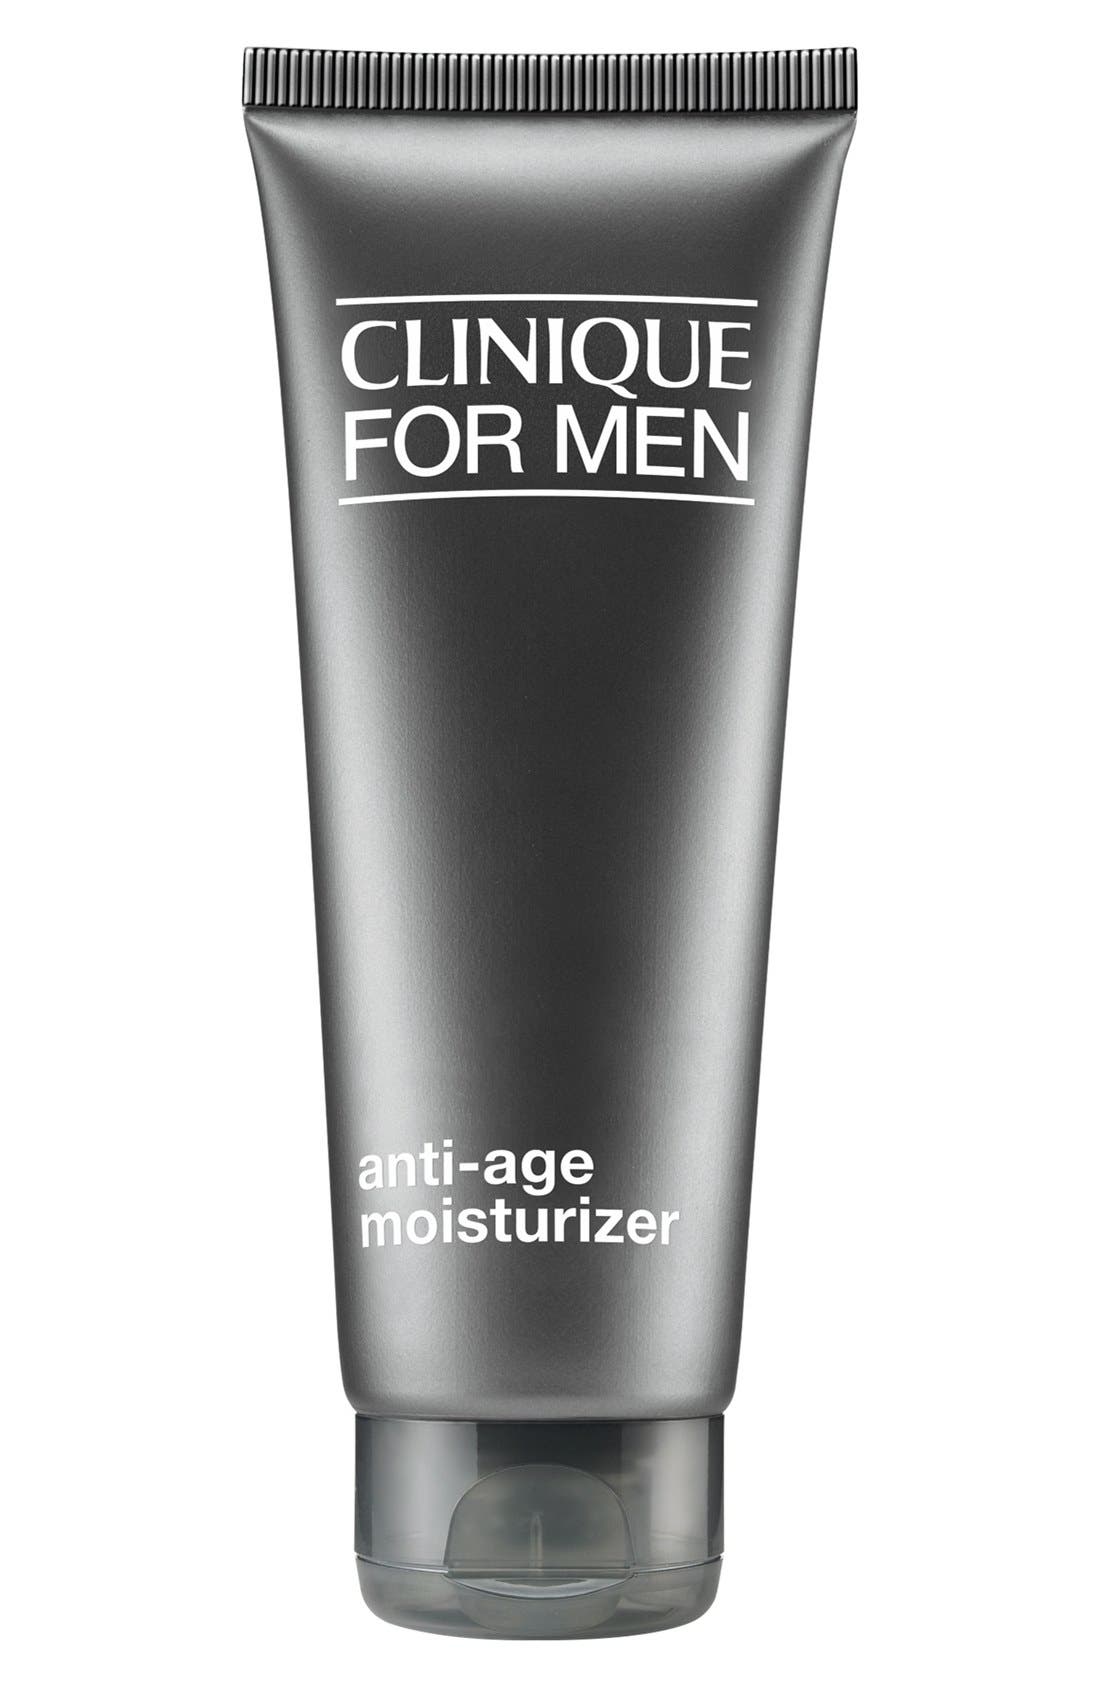 All black Clinique for men moisturizer tube